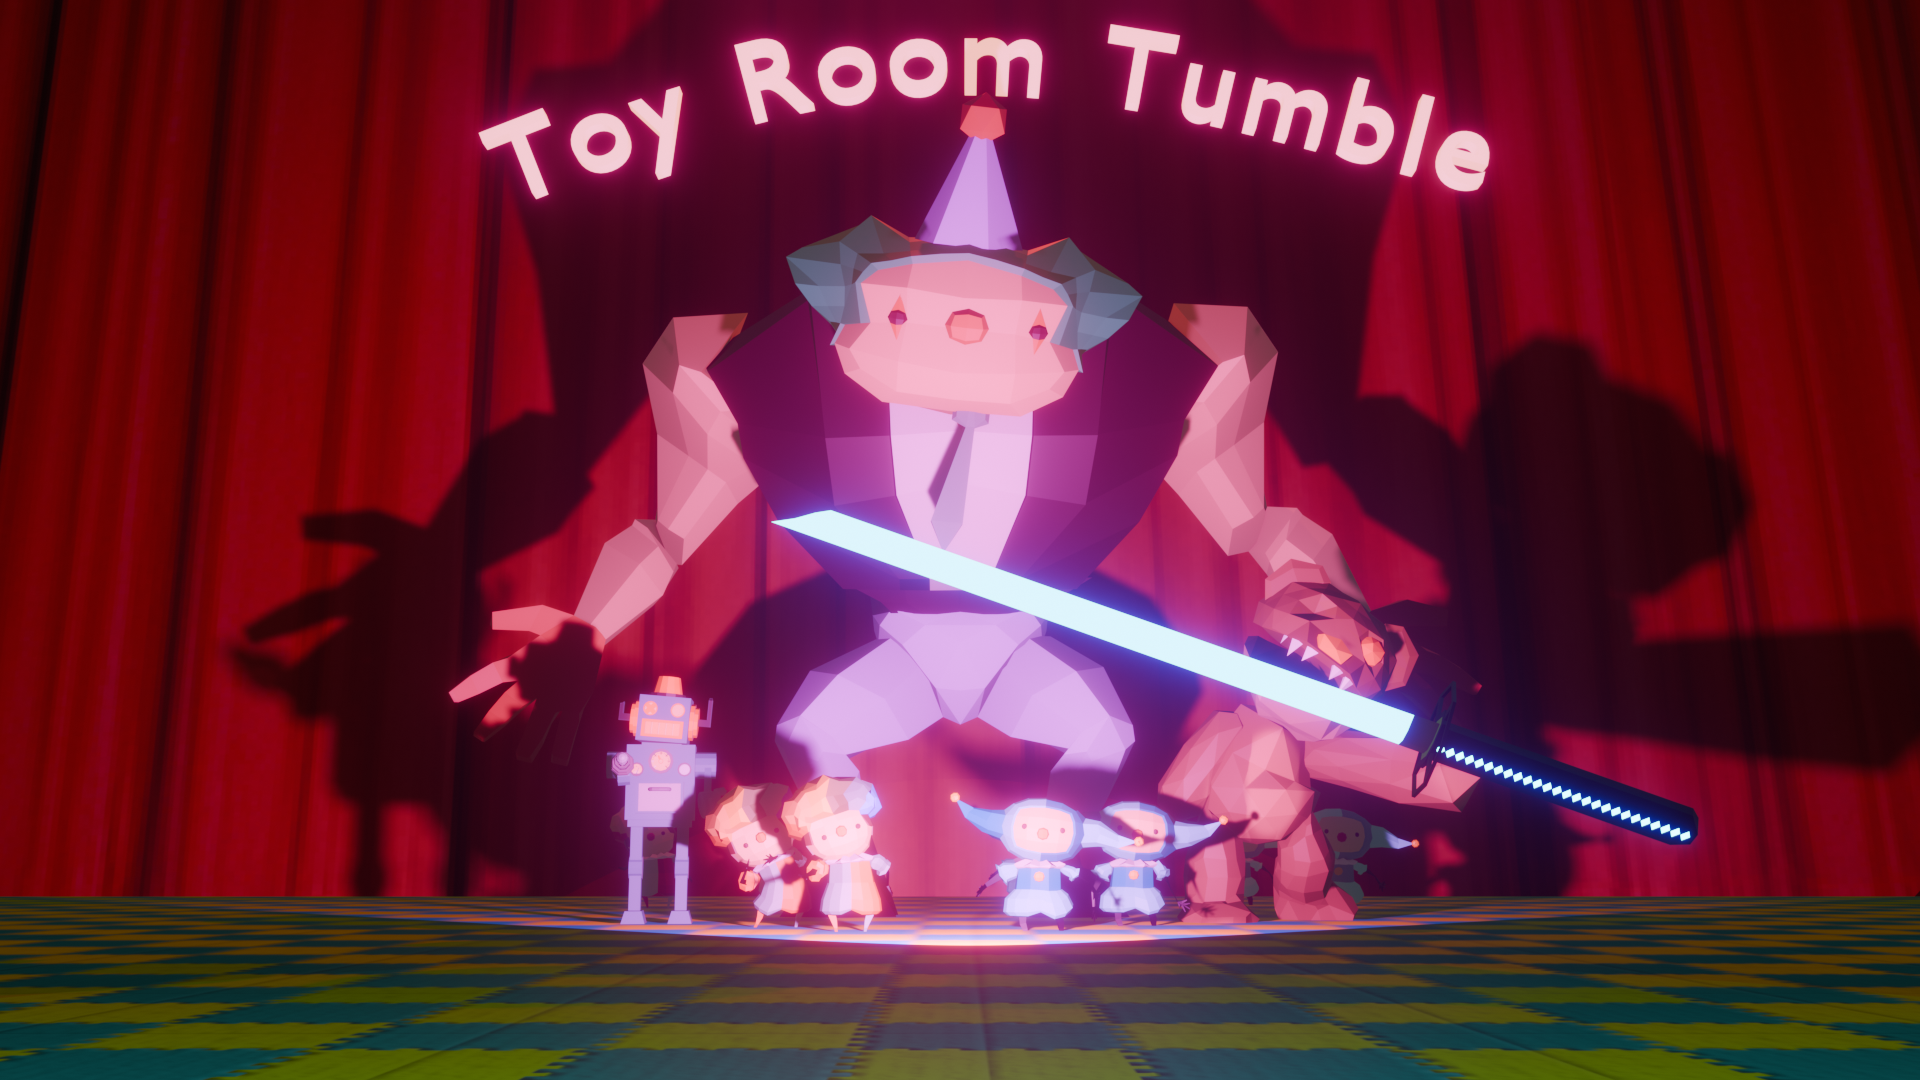 Toy Room Tumble